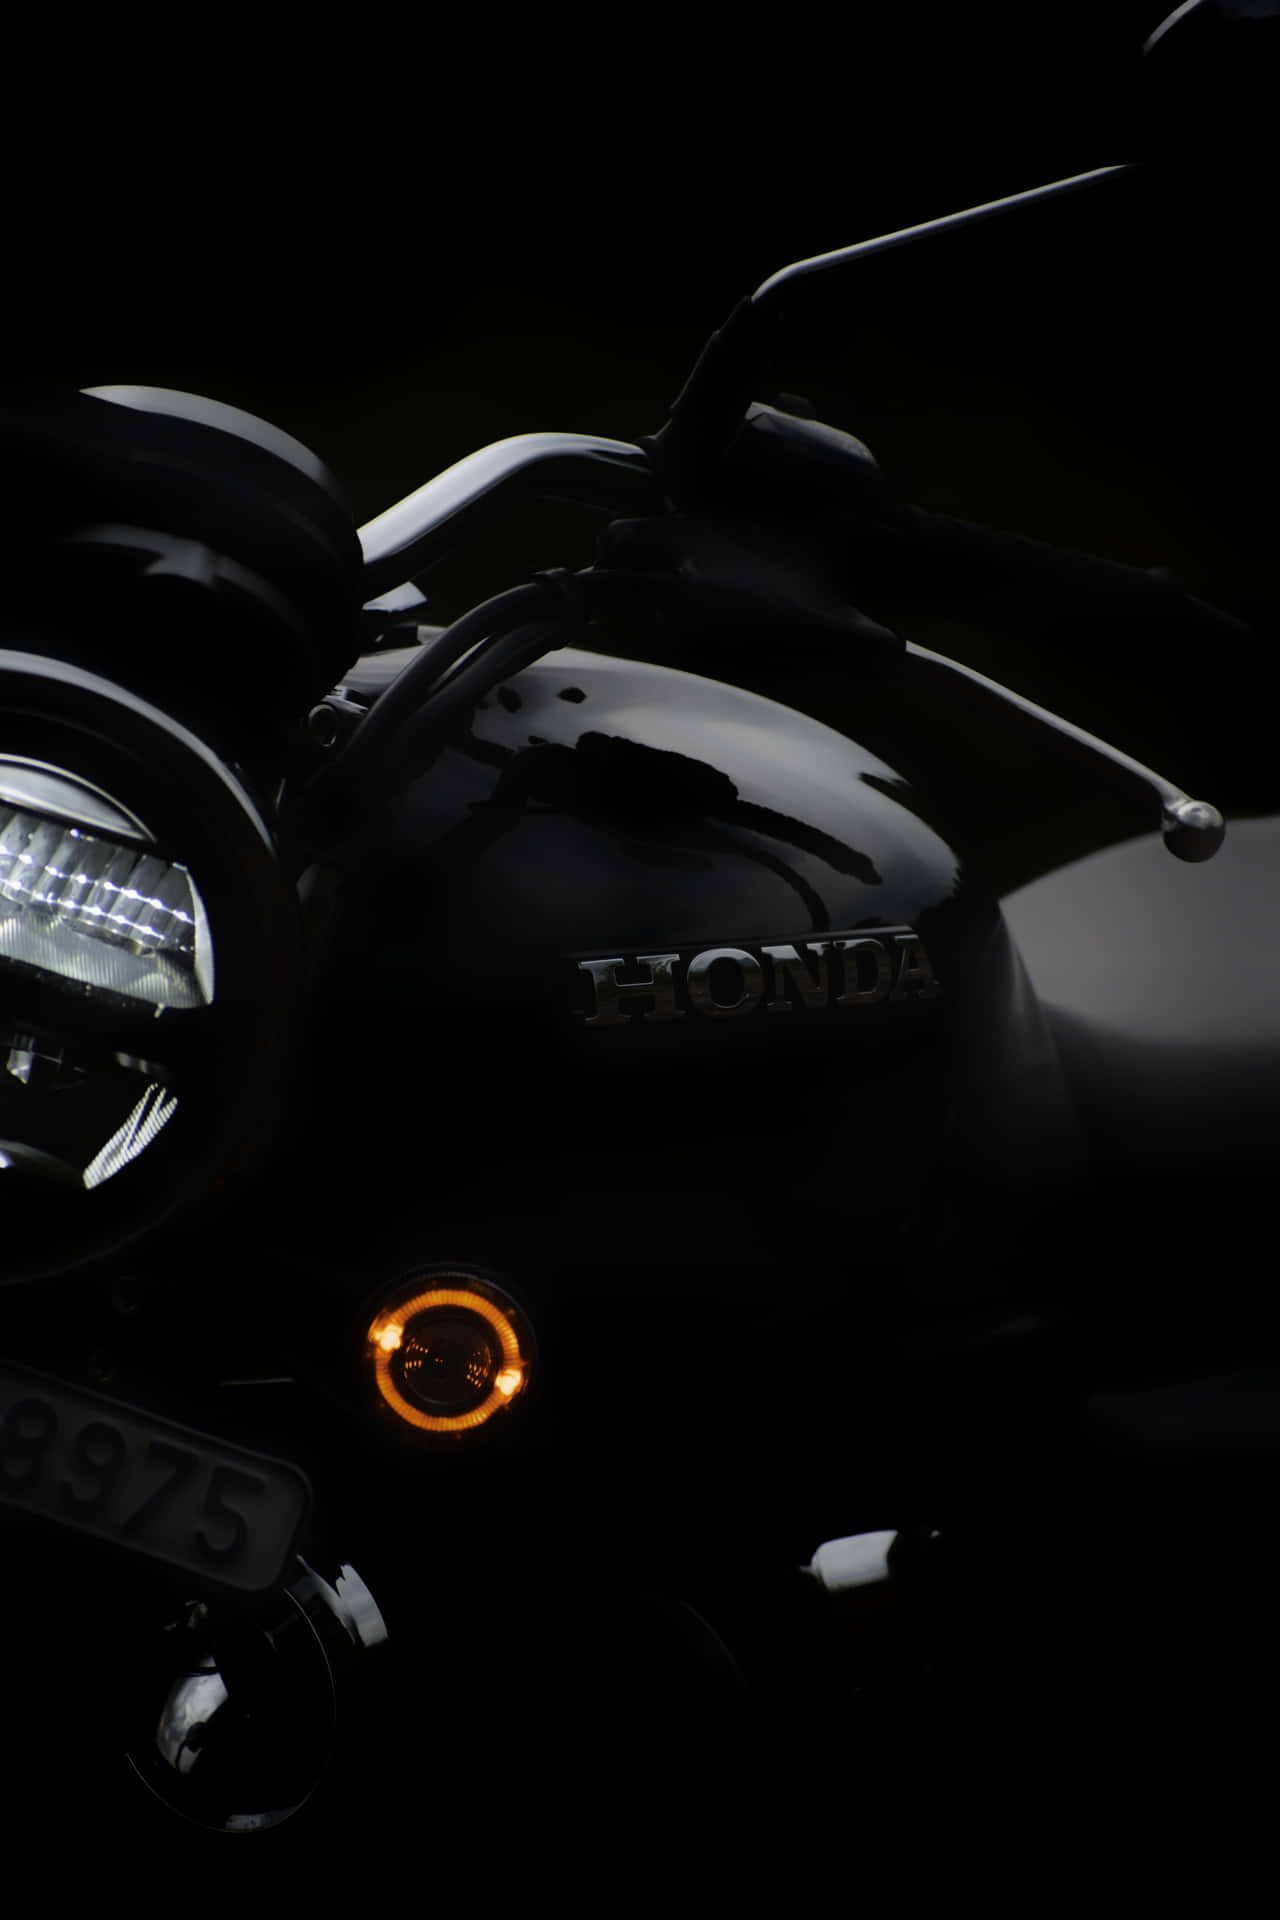 Thrilling Speed - Honda Cbr Motorcycle Wallpaper